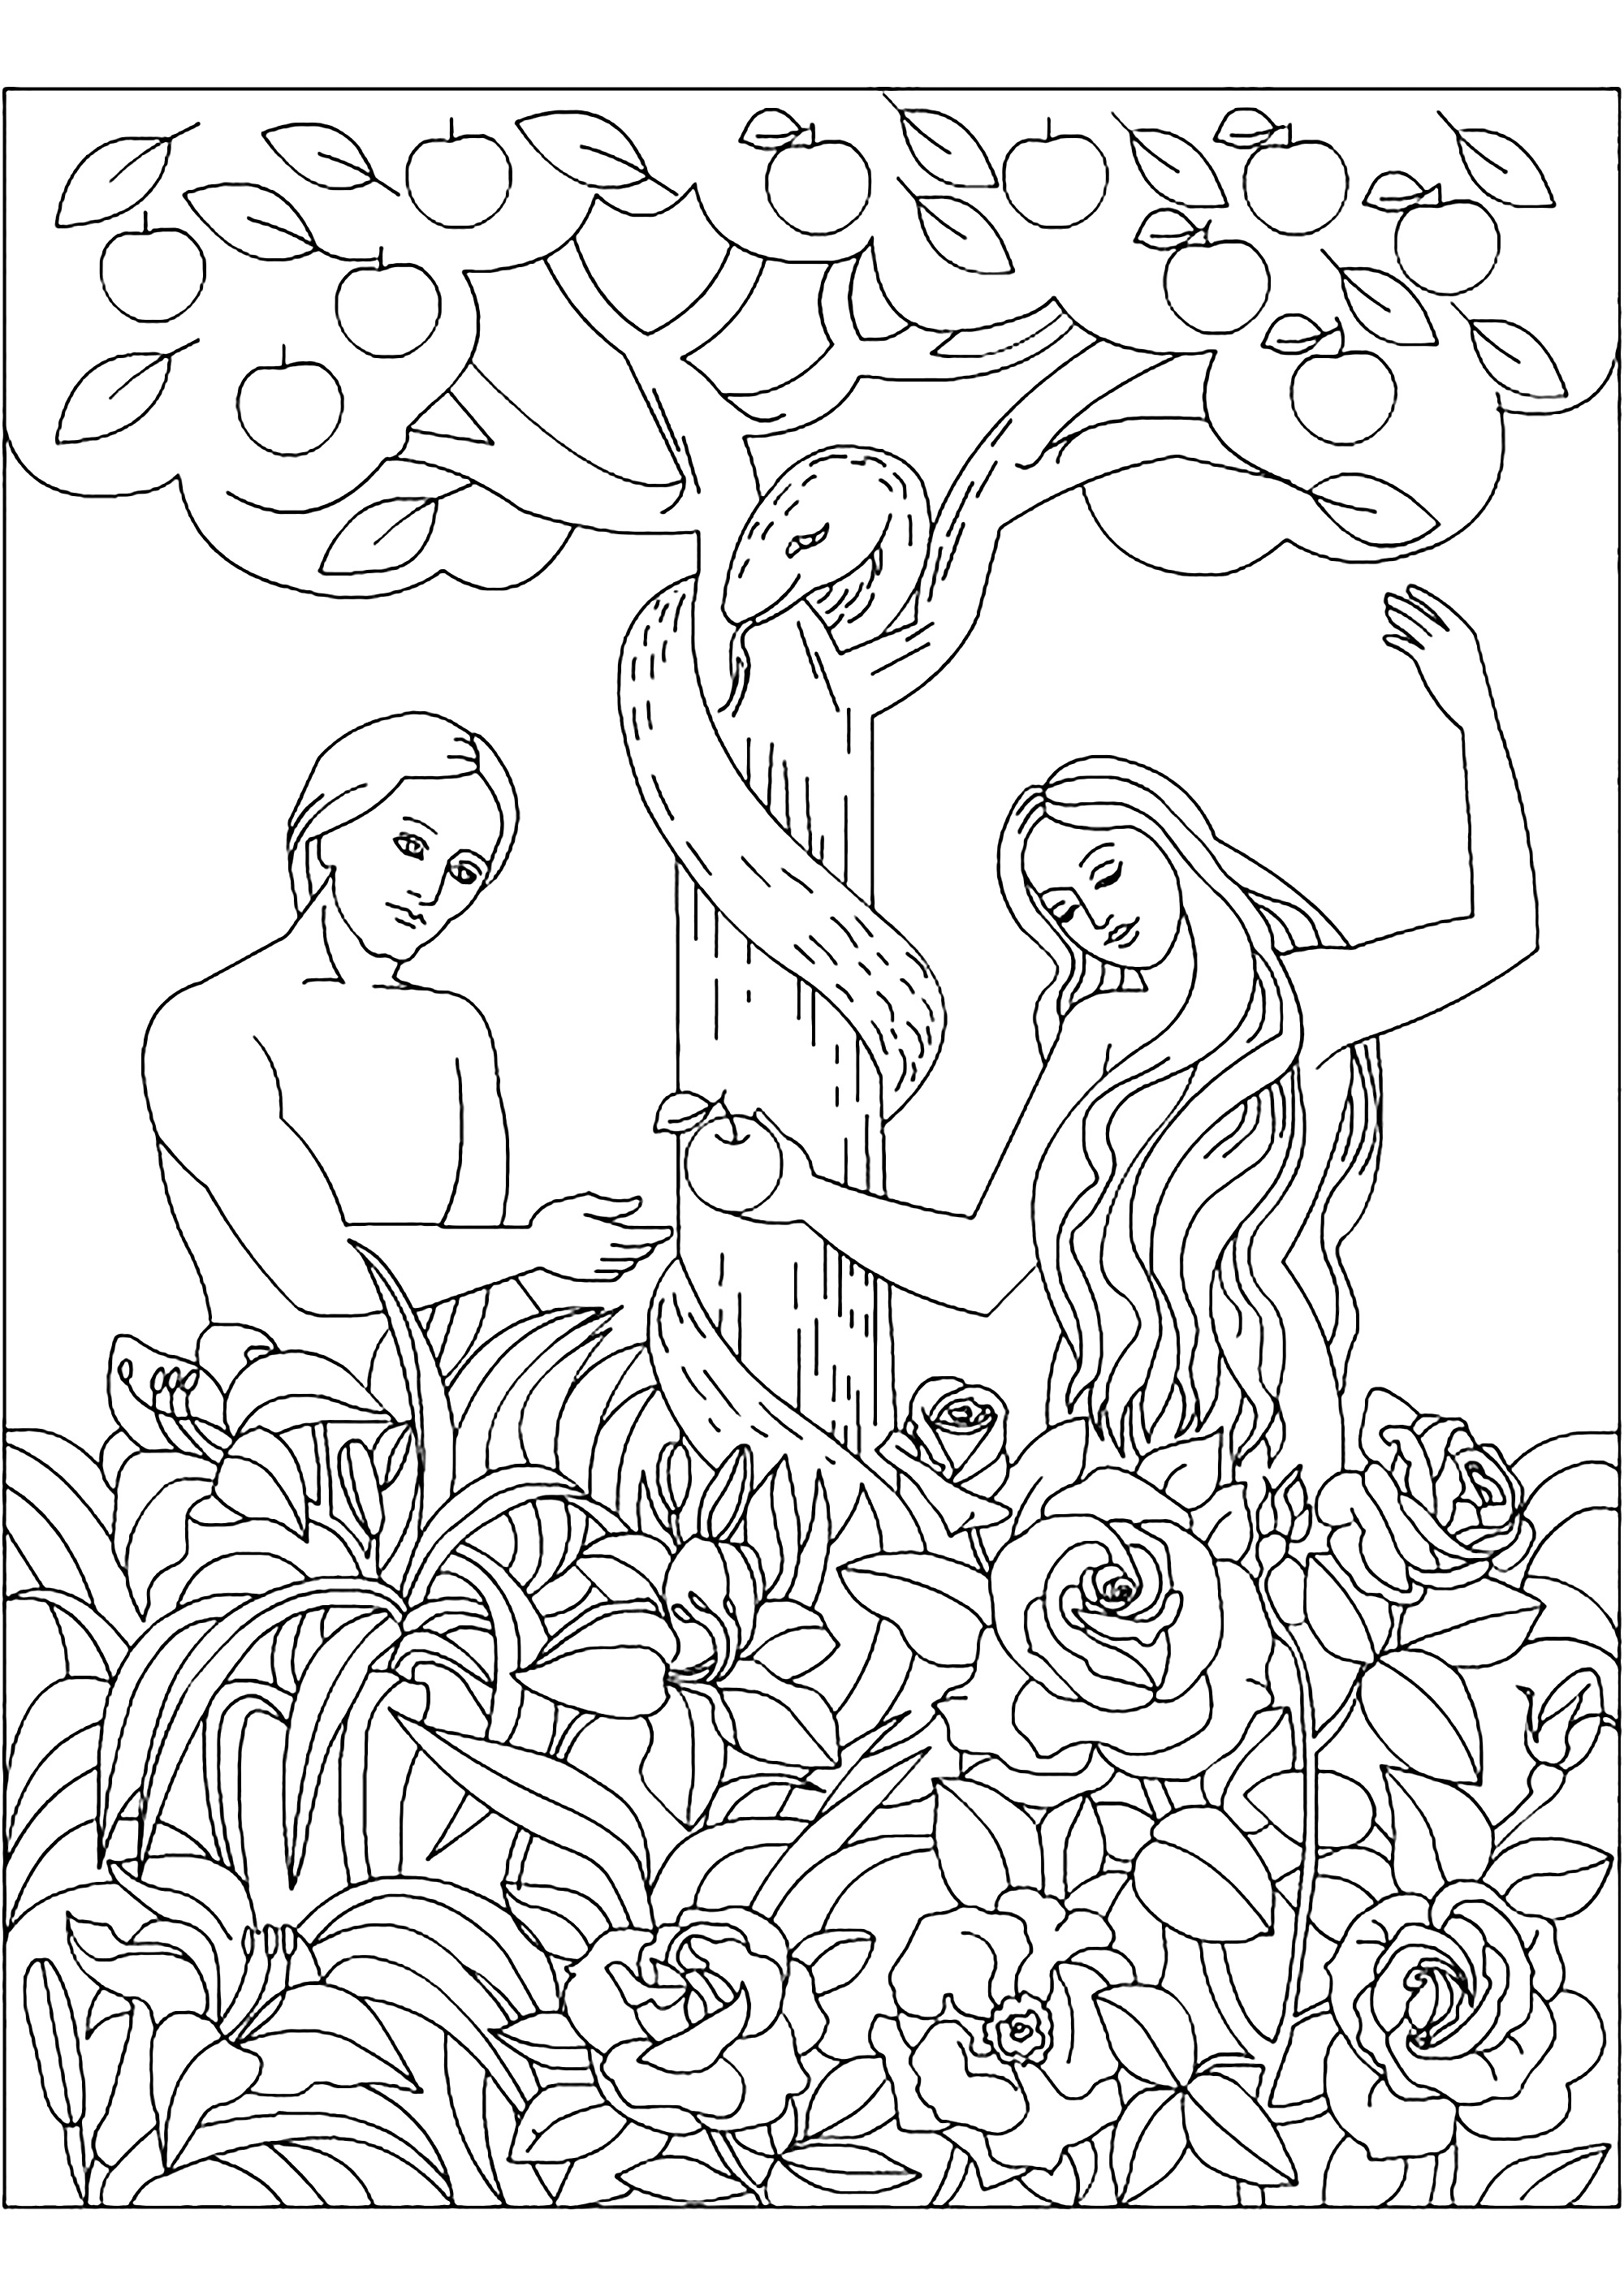 Adão e Eva para colorir. Colorir Adão, Eva, a serpente e a famosa maçã